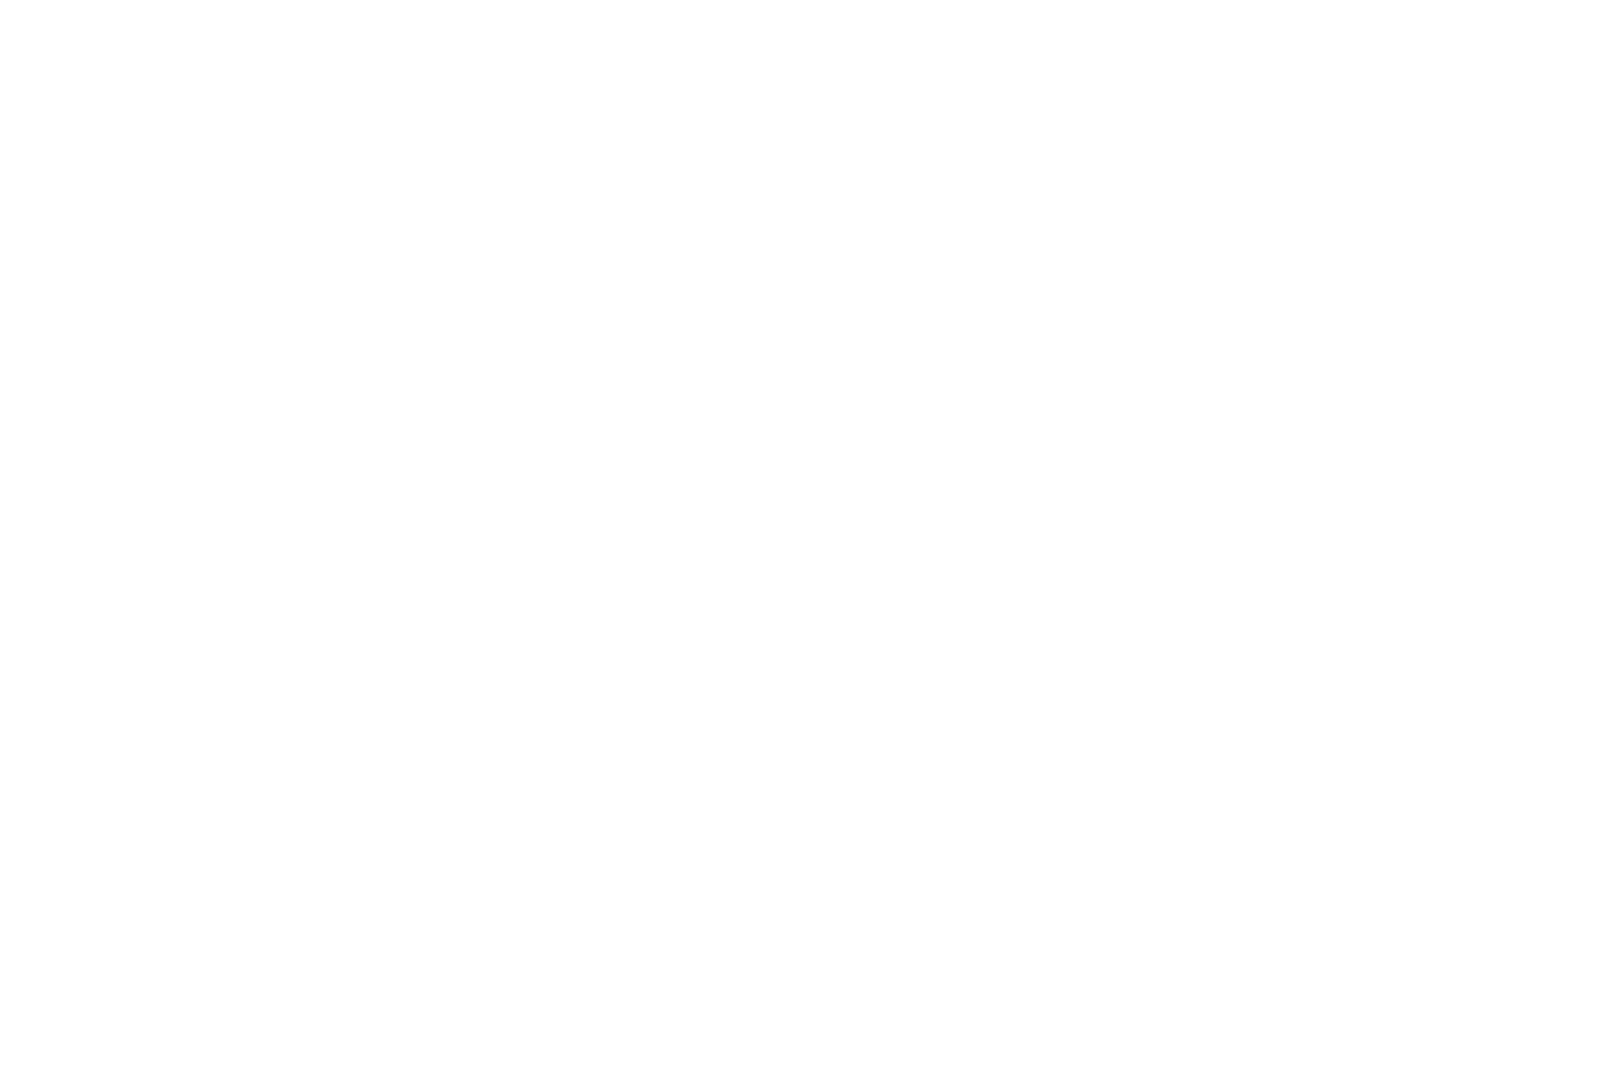 乃木坂46秋元真夏、“ぶりっ子”に対する意見に「グサッときました」サムネイル画像!